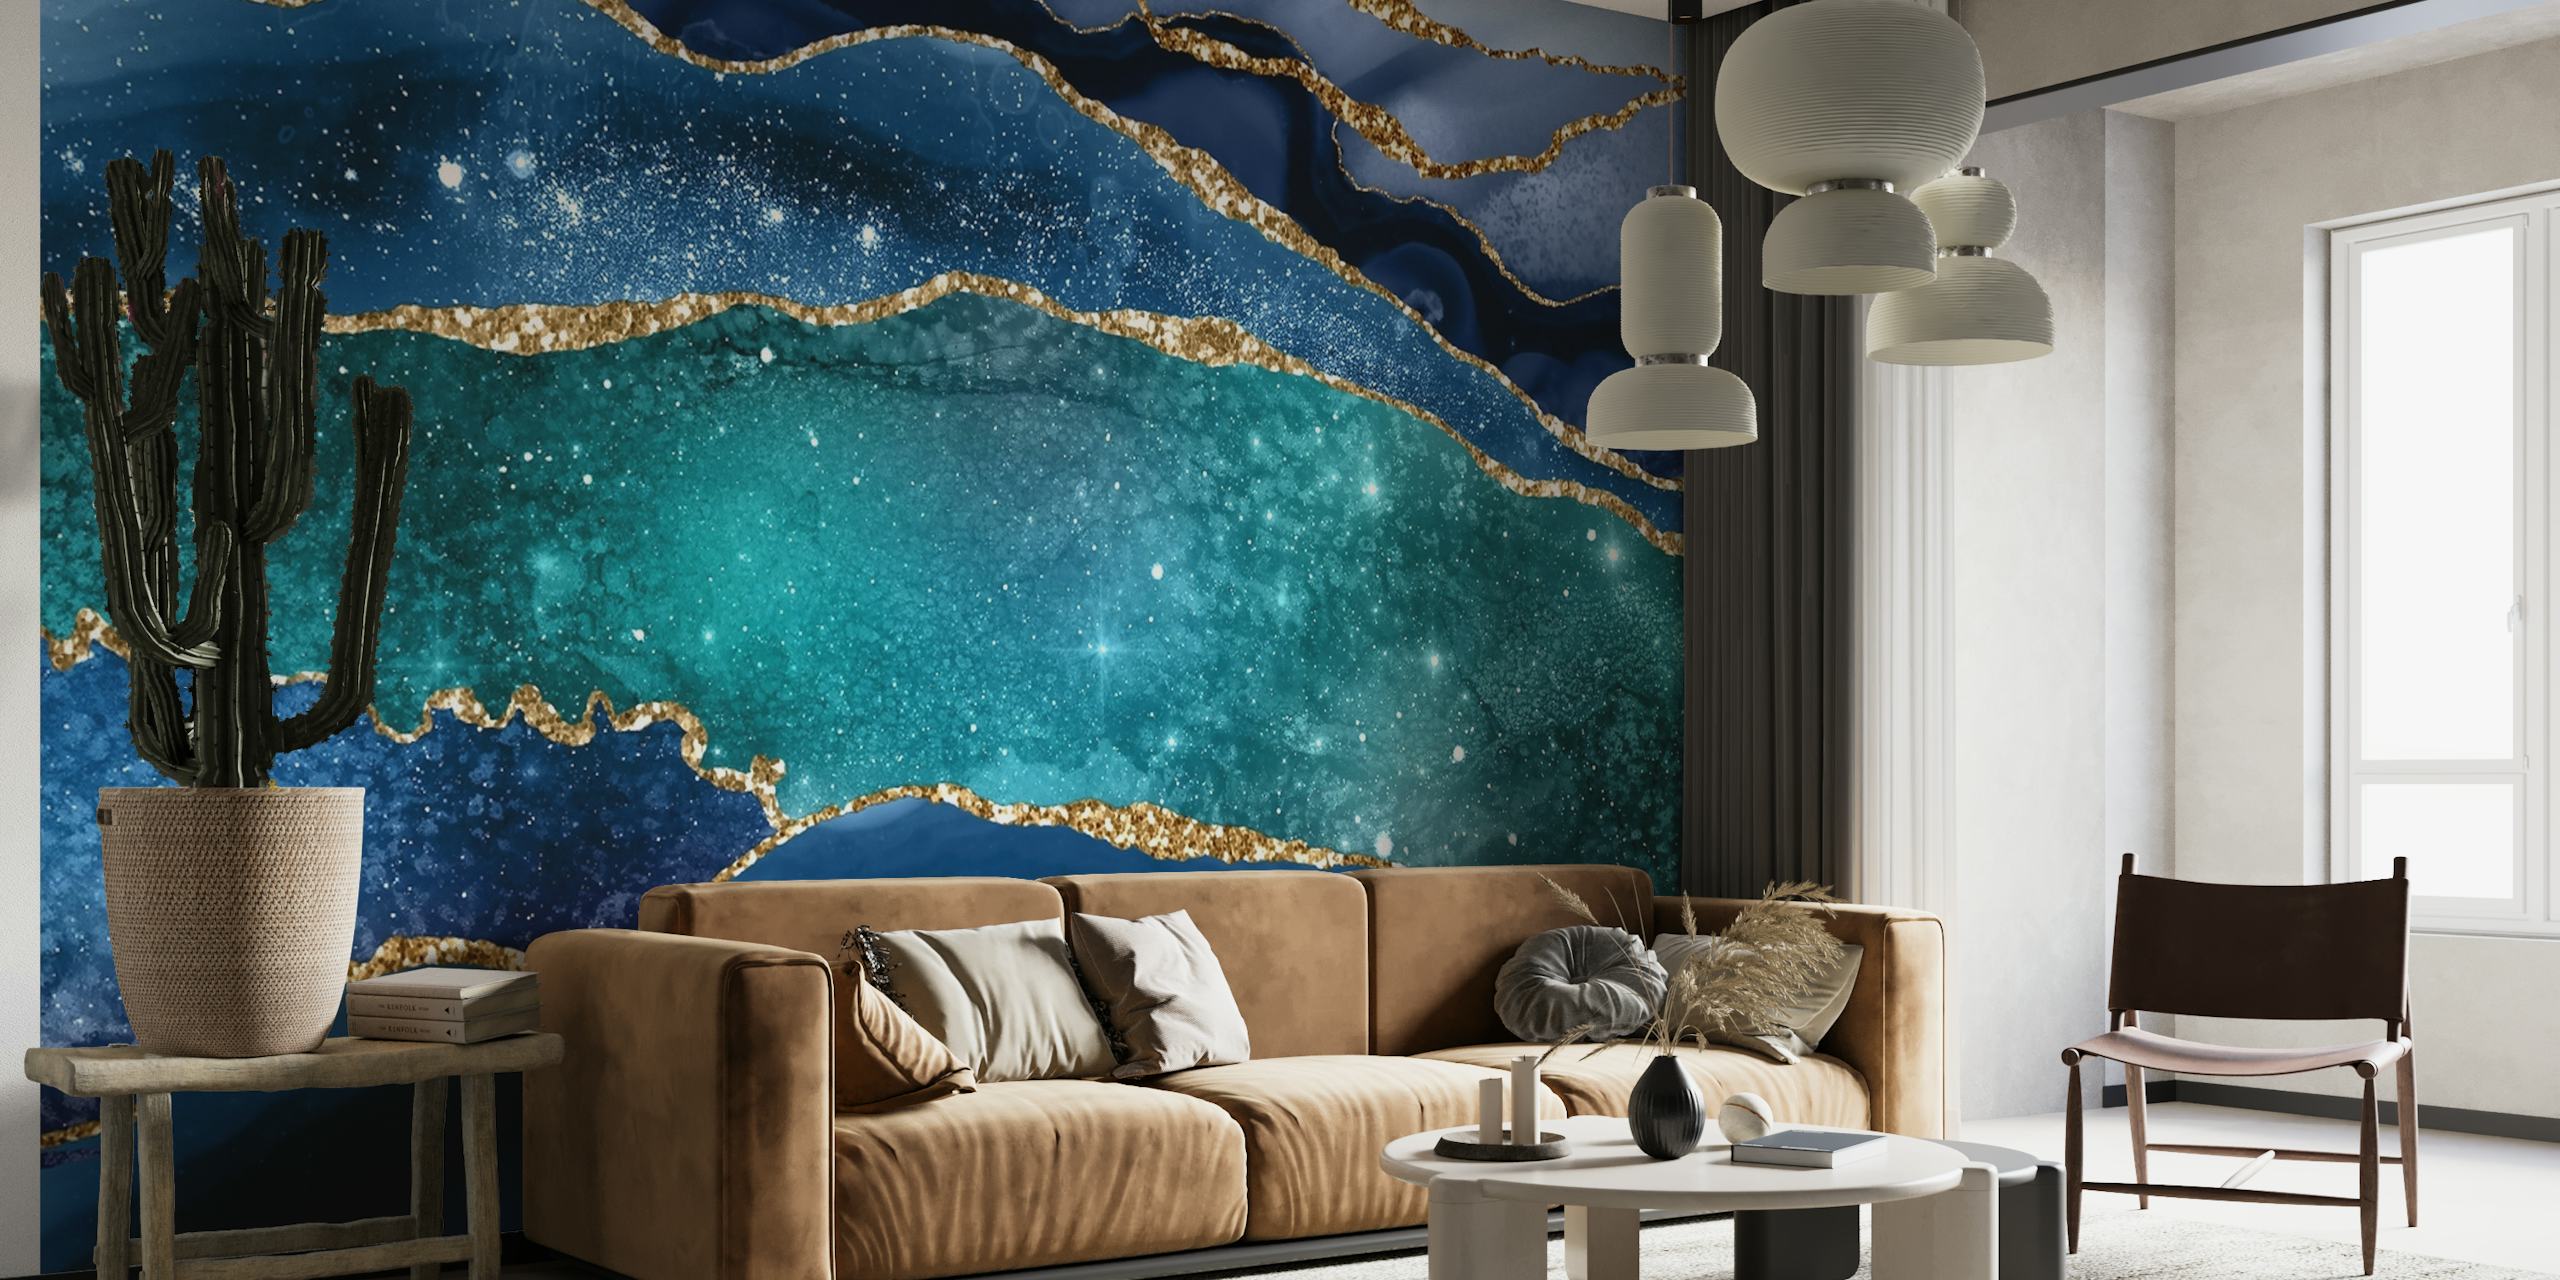 Marmeren textuur met galactisch thema en gouden aderen die lijken op een sterrenhemel